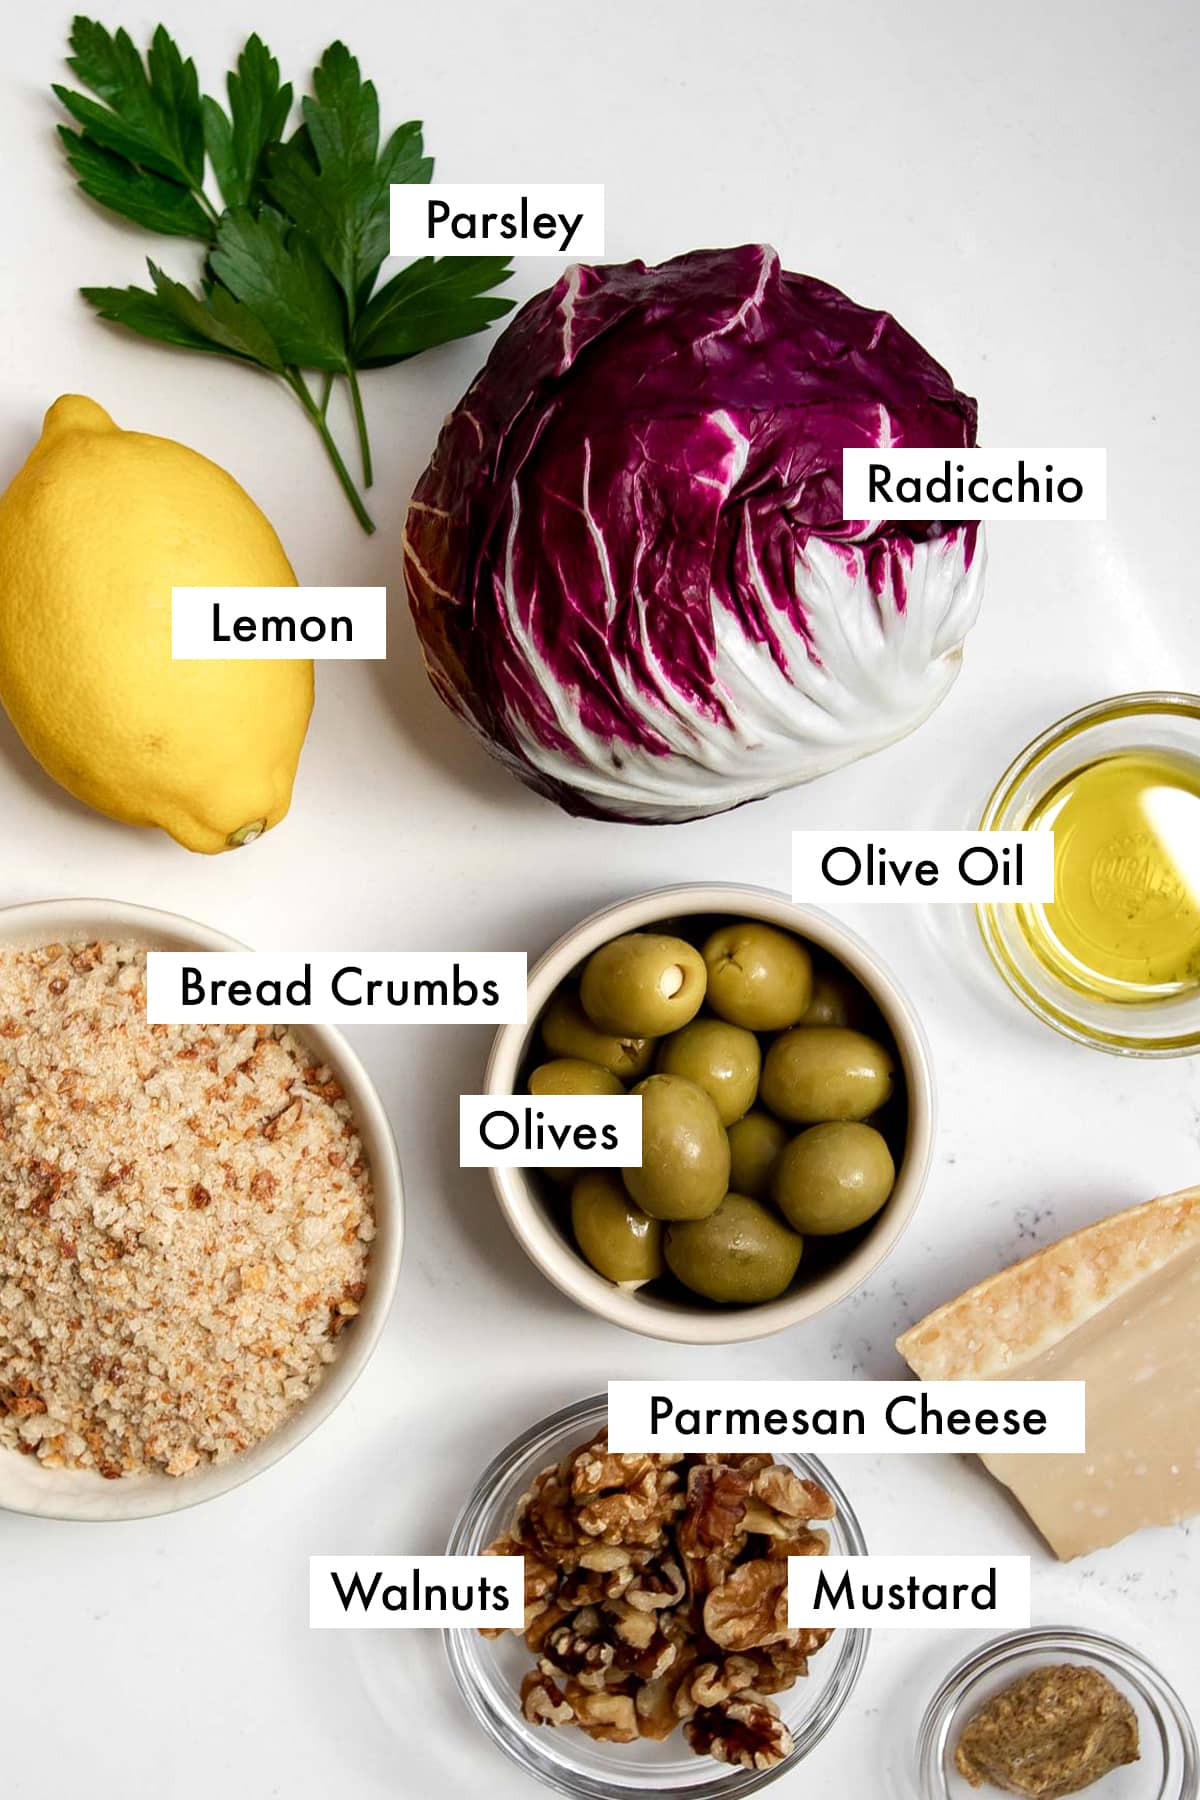 ingredients to make radicchio salad.